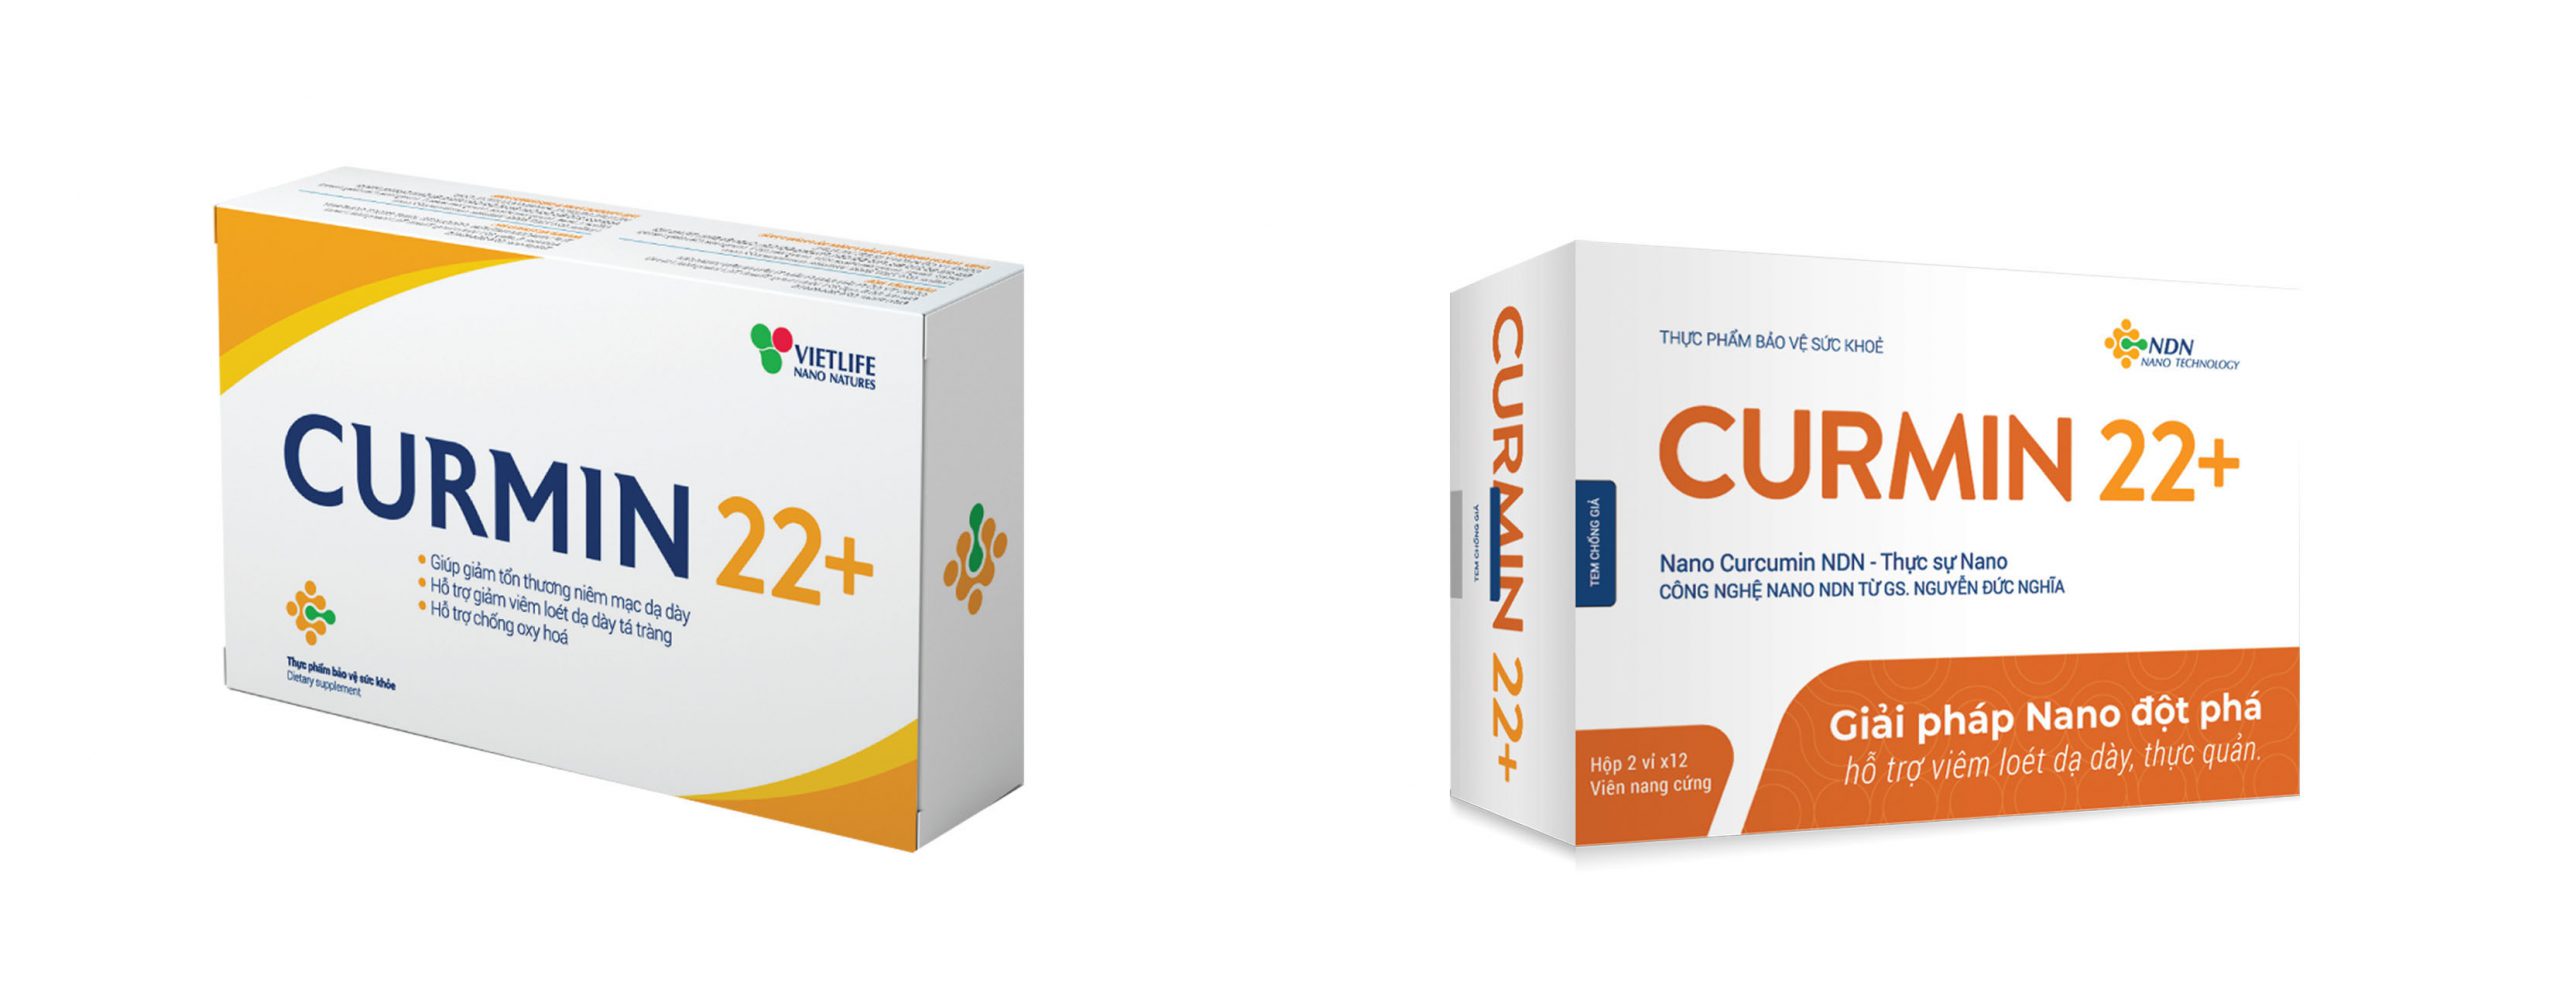 2 mẫu bao bì sản phẩm Curmin 22+ đang lưu hành trên thị trường